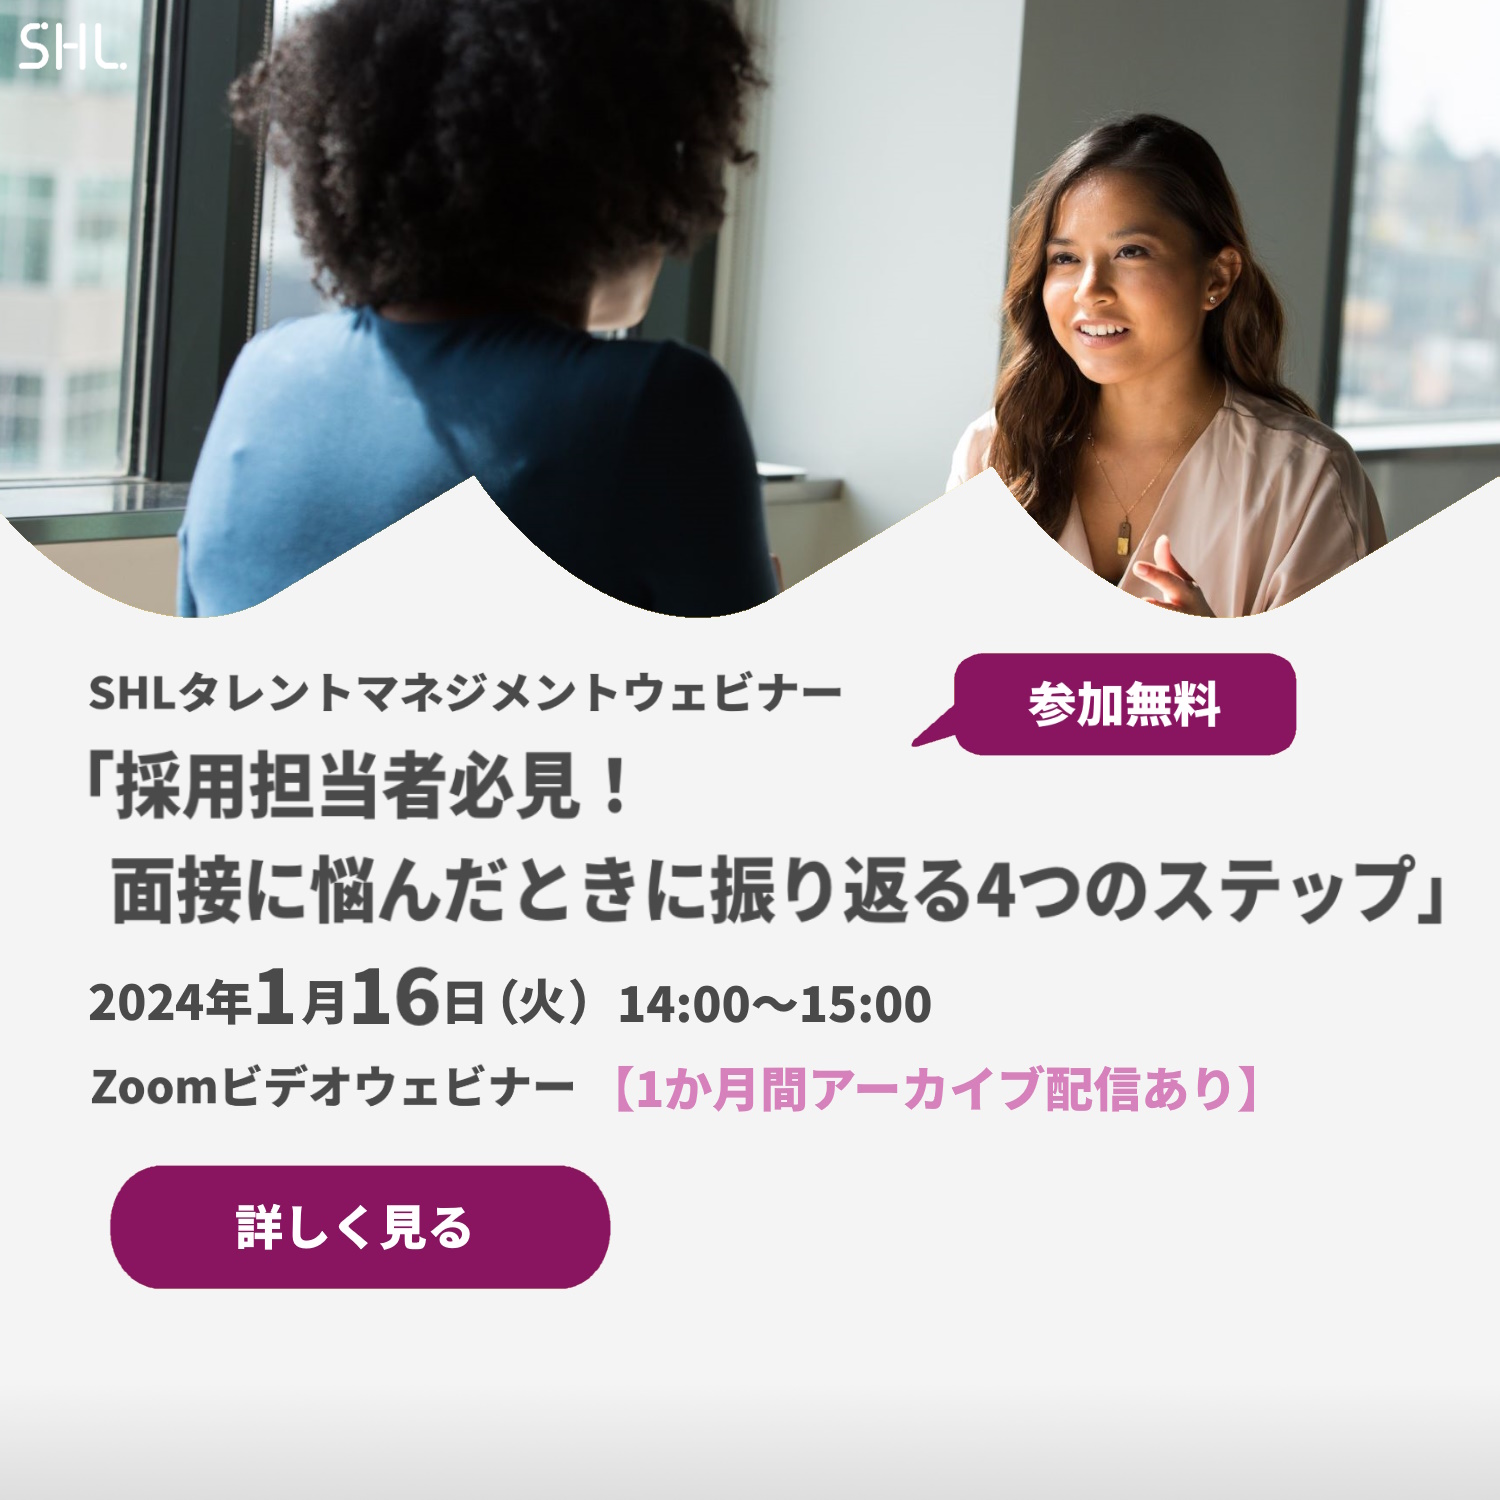 SHLタレントマネジメントソリューション | 日本エス・エイチ・エル株式会社